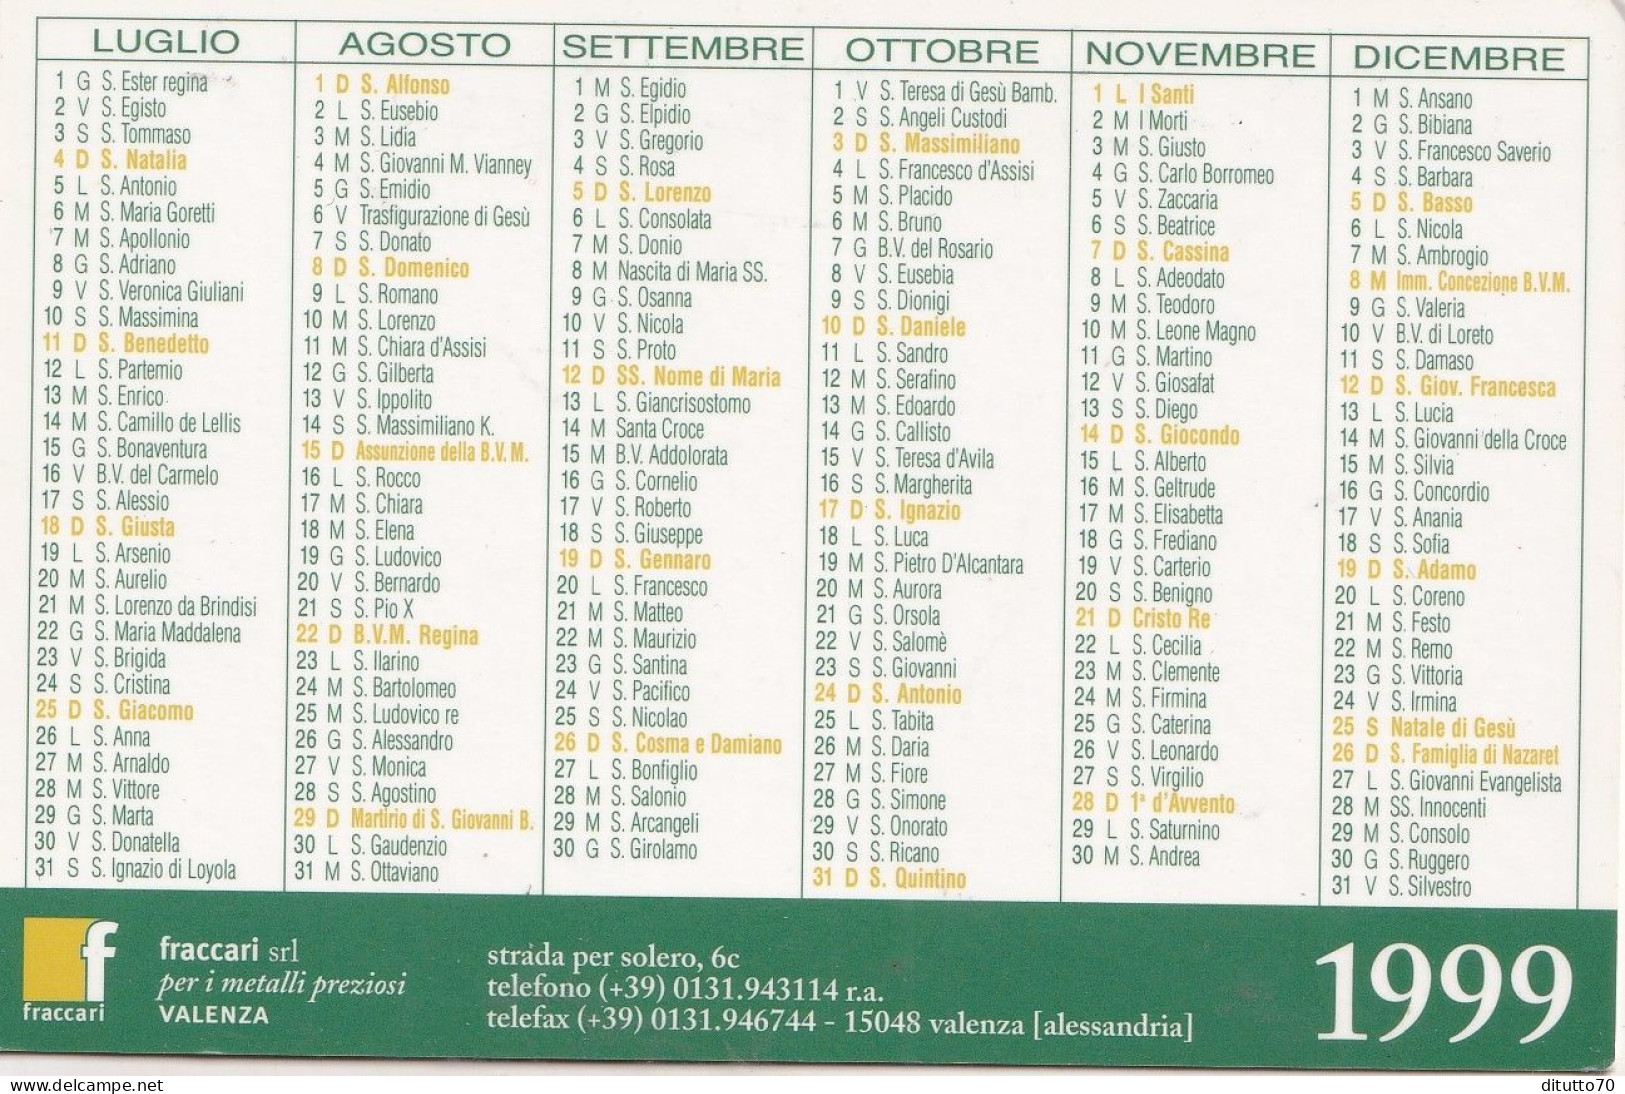 Calendarietto - Fraccari - Valenza - Anno 1999 - Formato Piccolo : 1991-00